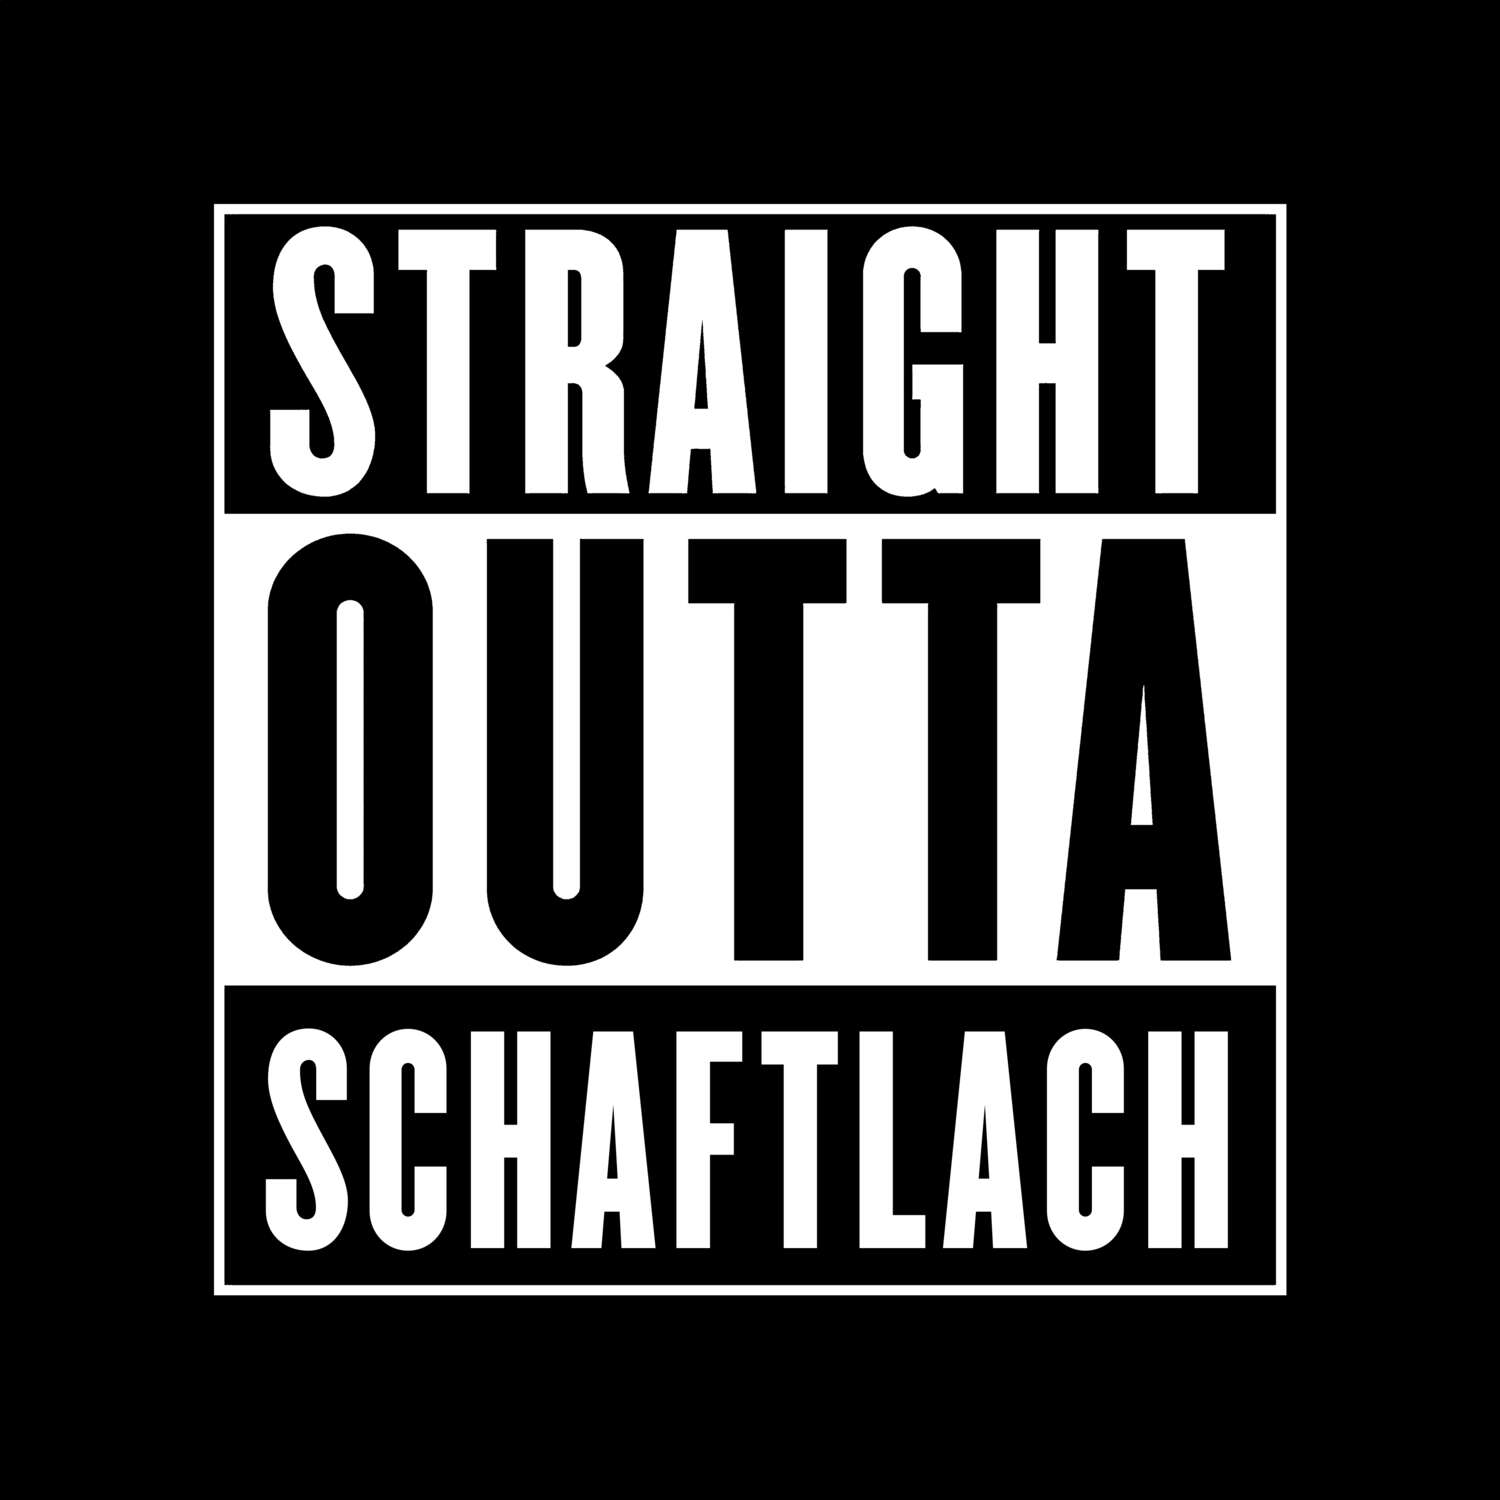 Schaftlach T-Shirt »Straight Outta«